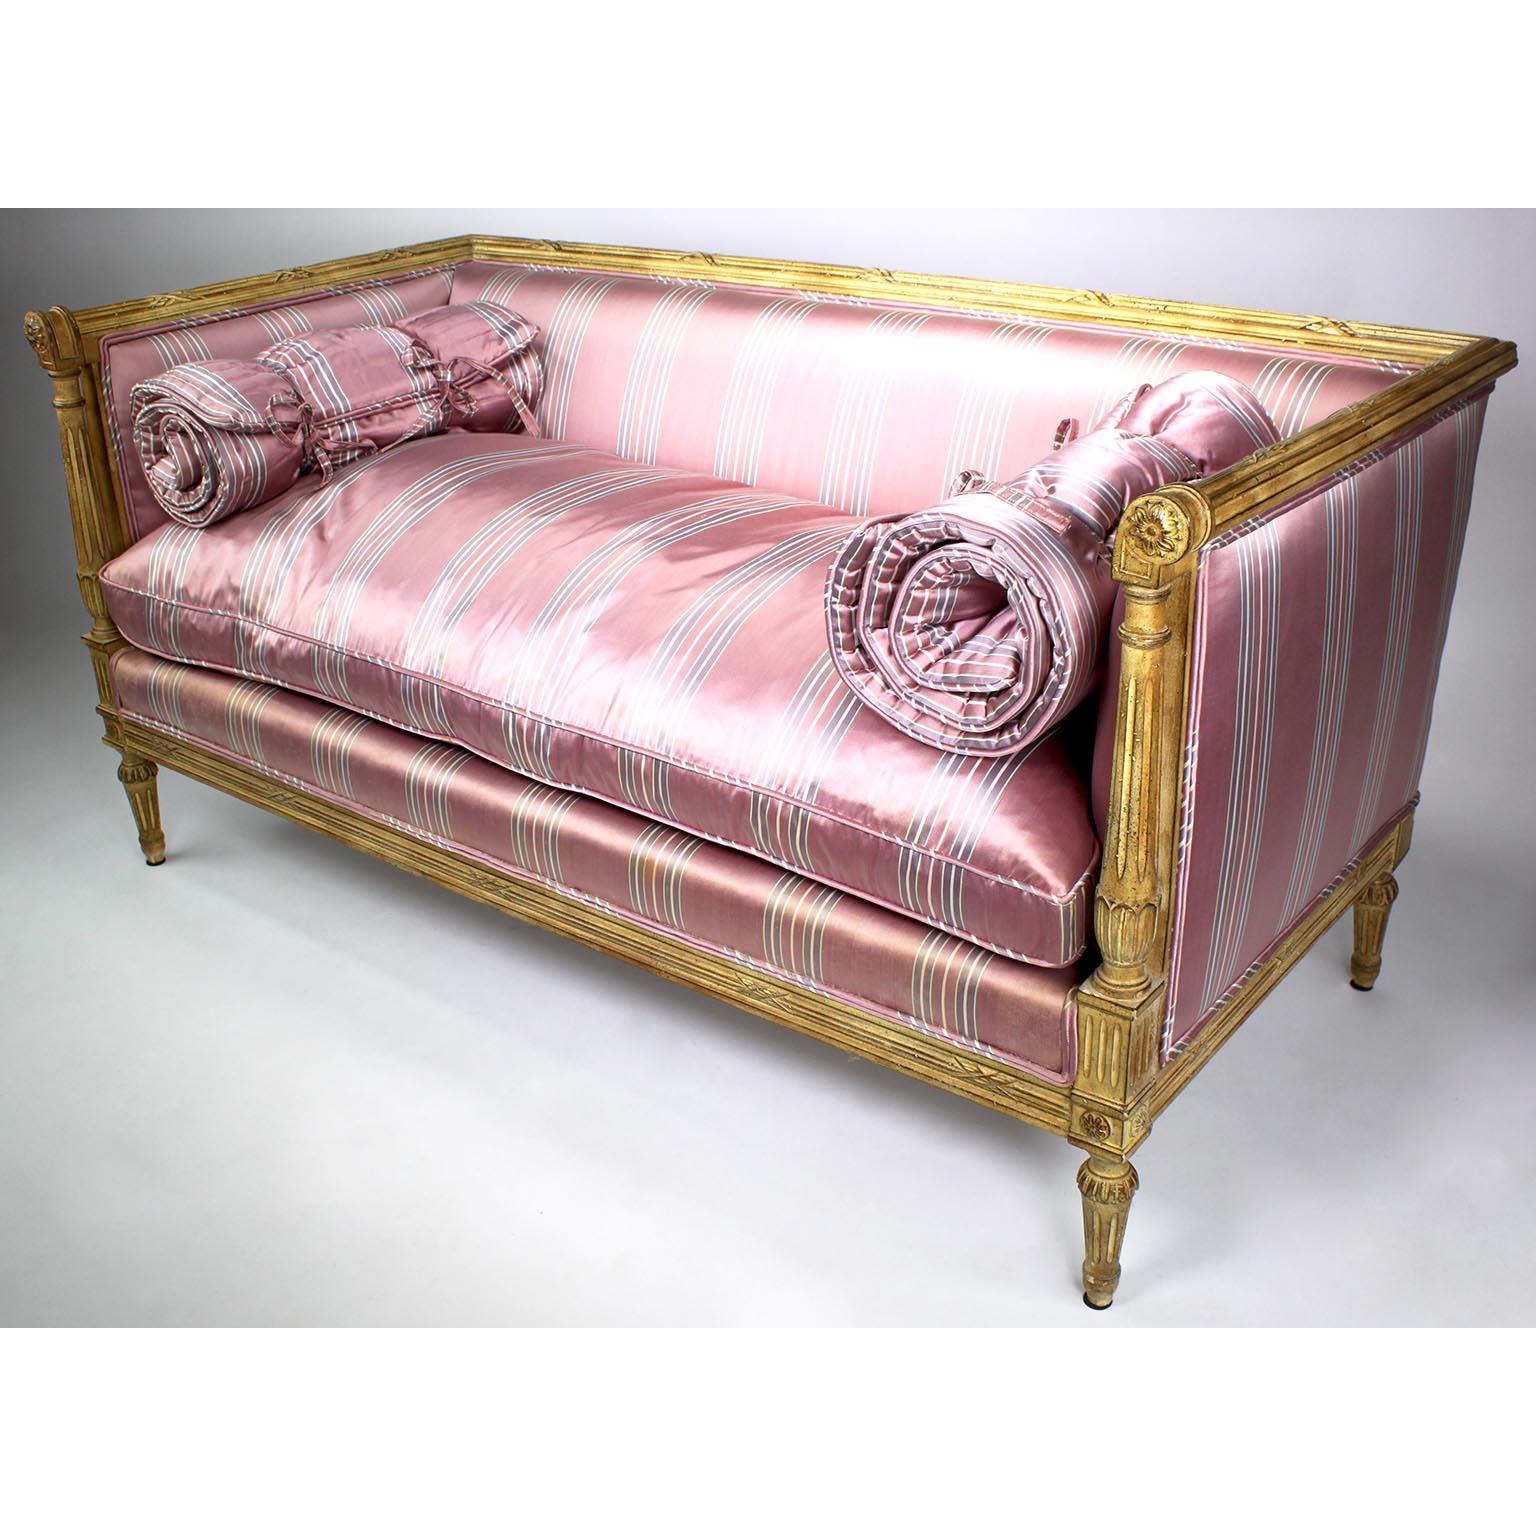 Ein feines Paar französischer, geschnitzter, cremefarben lackierter Sofas im Louis XVI-Stil, wahrscheinlich von Maison Jansen. Die rechteckig geformten Love Seats mit geschnitzten Armlehnen, die mit Rosetten abschließen, sind allseitig gepolstert